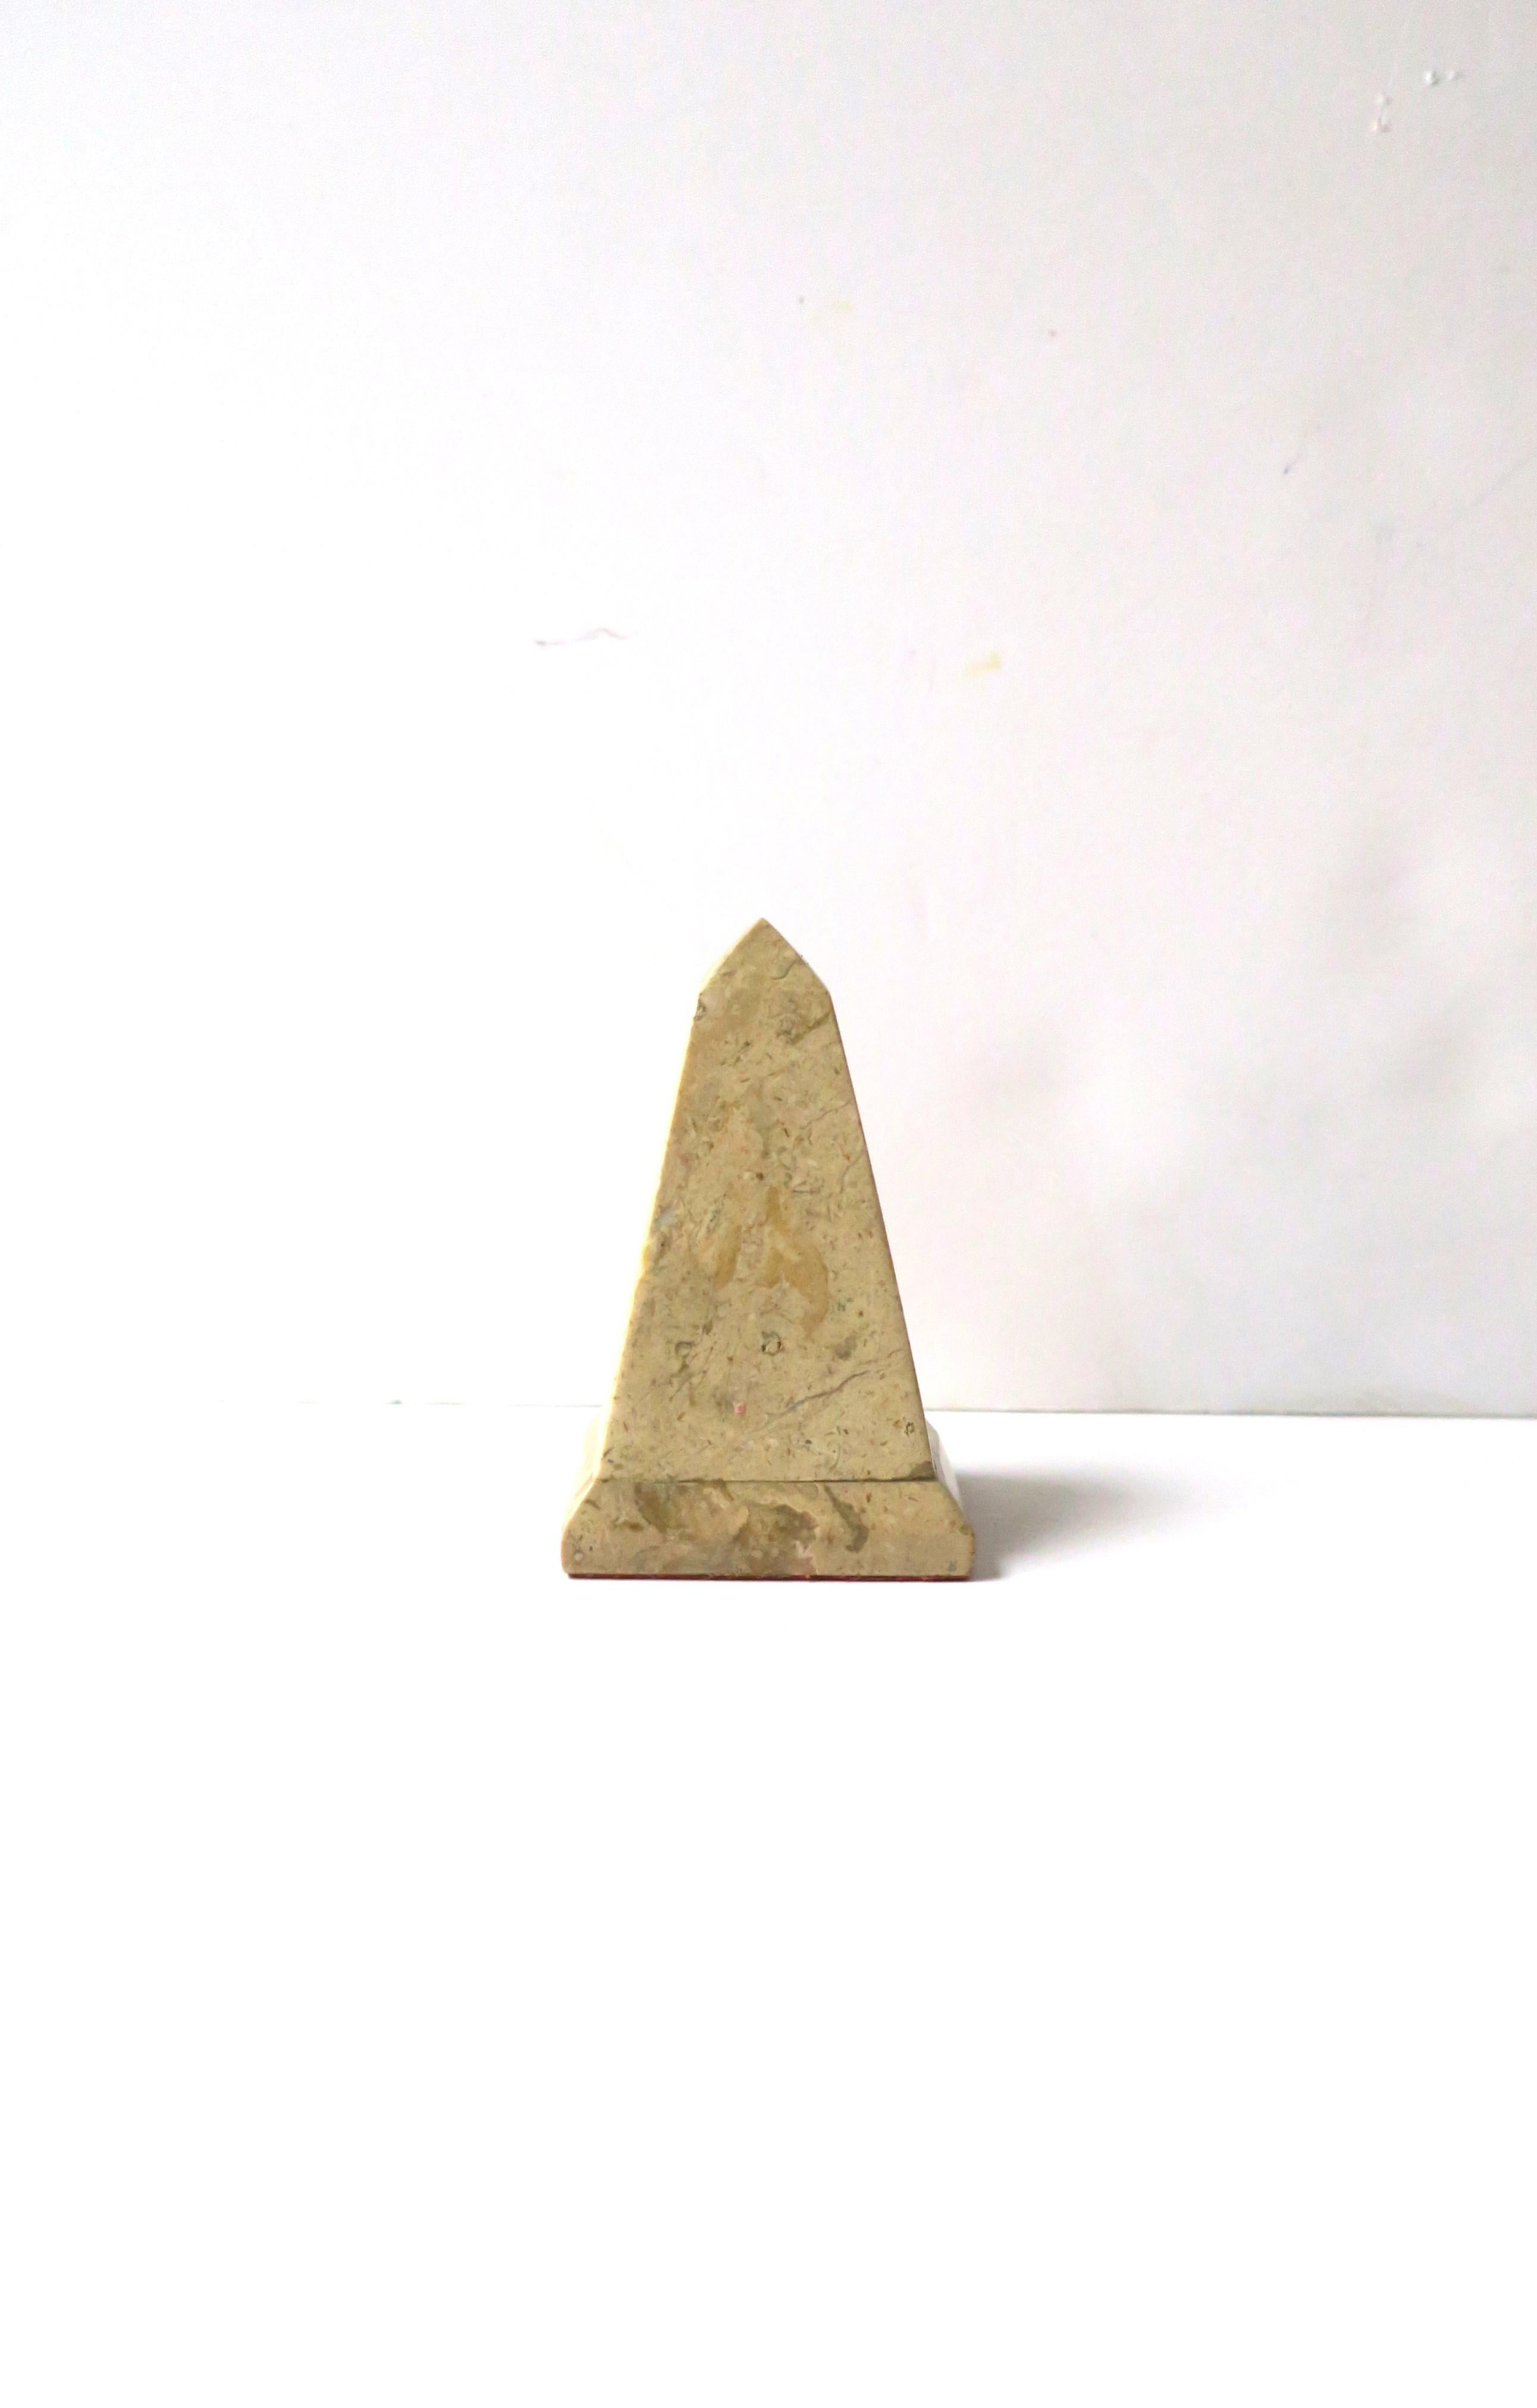 Kleiner, neutraler Obelisk aus Marmor im Stil der Moderne, ca. Mitte bis Ende des 20. Jahrhunderts, 1960er, 1970er Jahre. Marmor ist ein neutraler Marmorstein, der dem Farbton von Travertinmarmor ähnelt. Das Stück ist ein großartiges